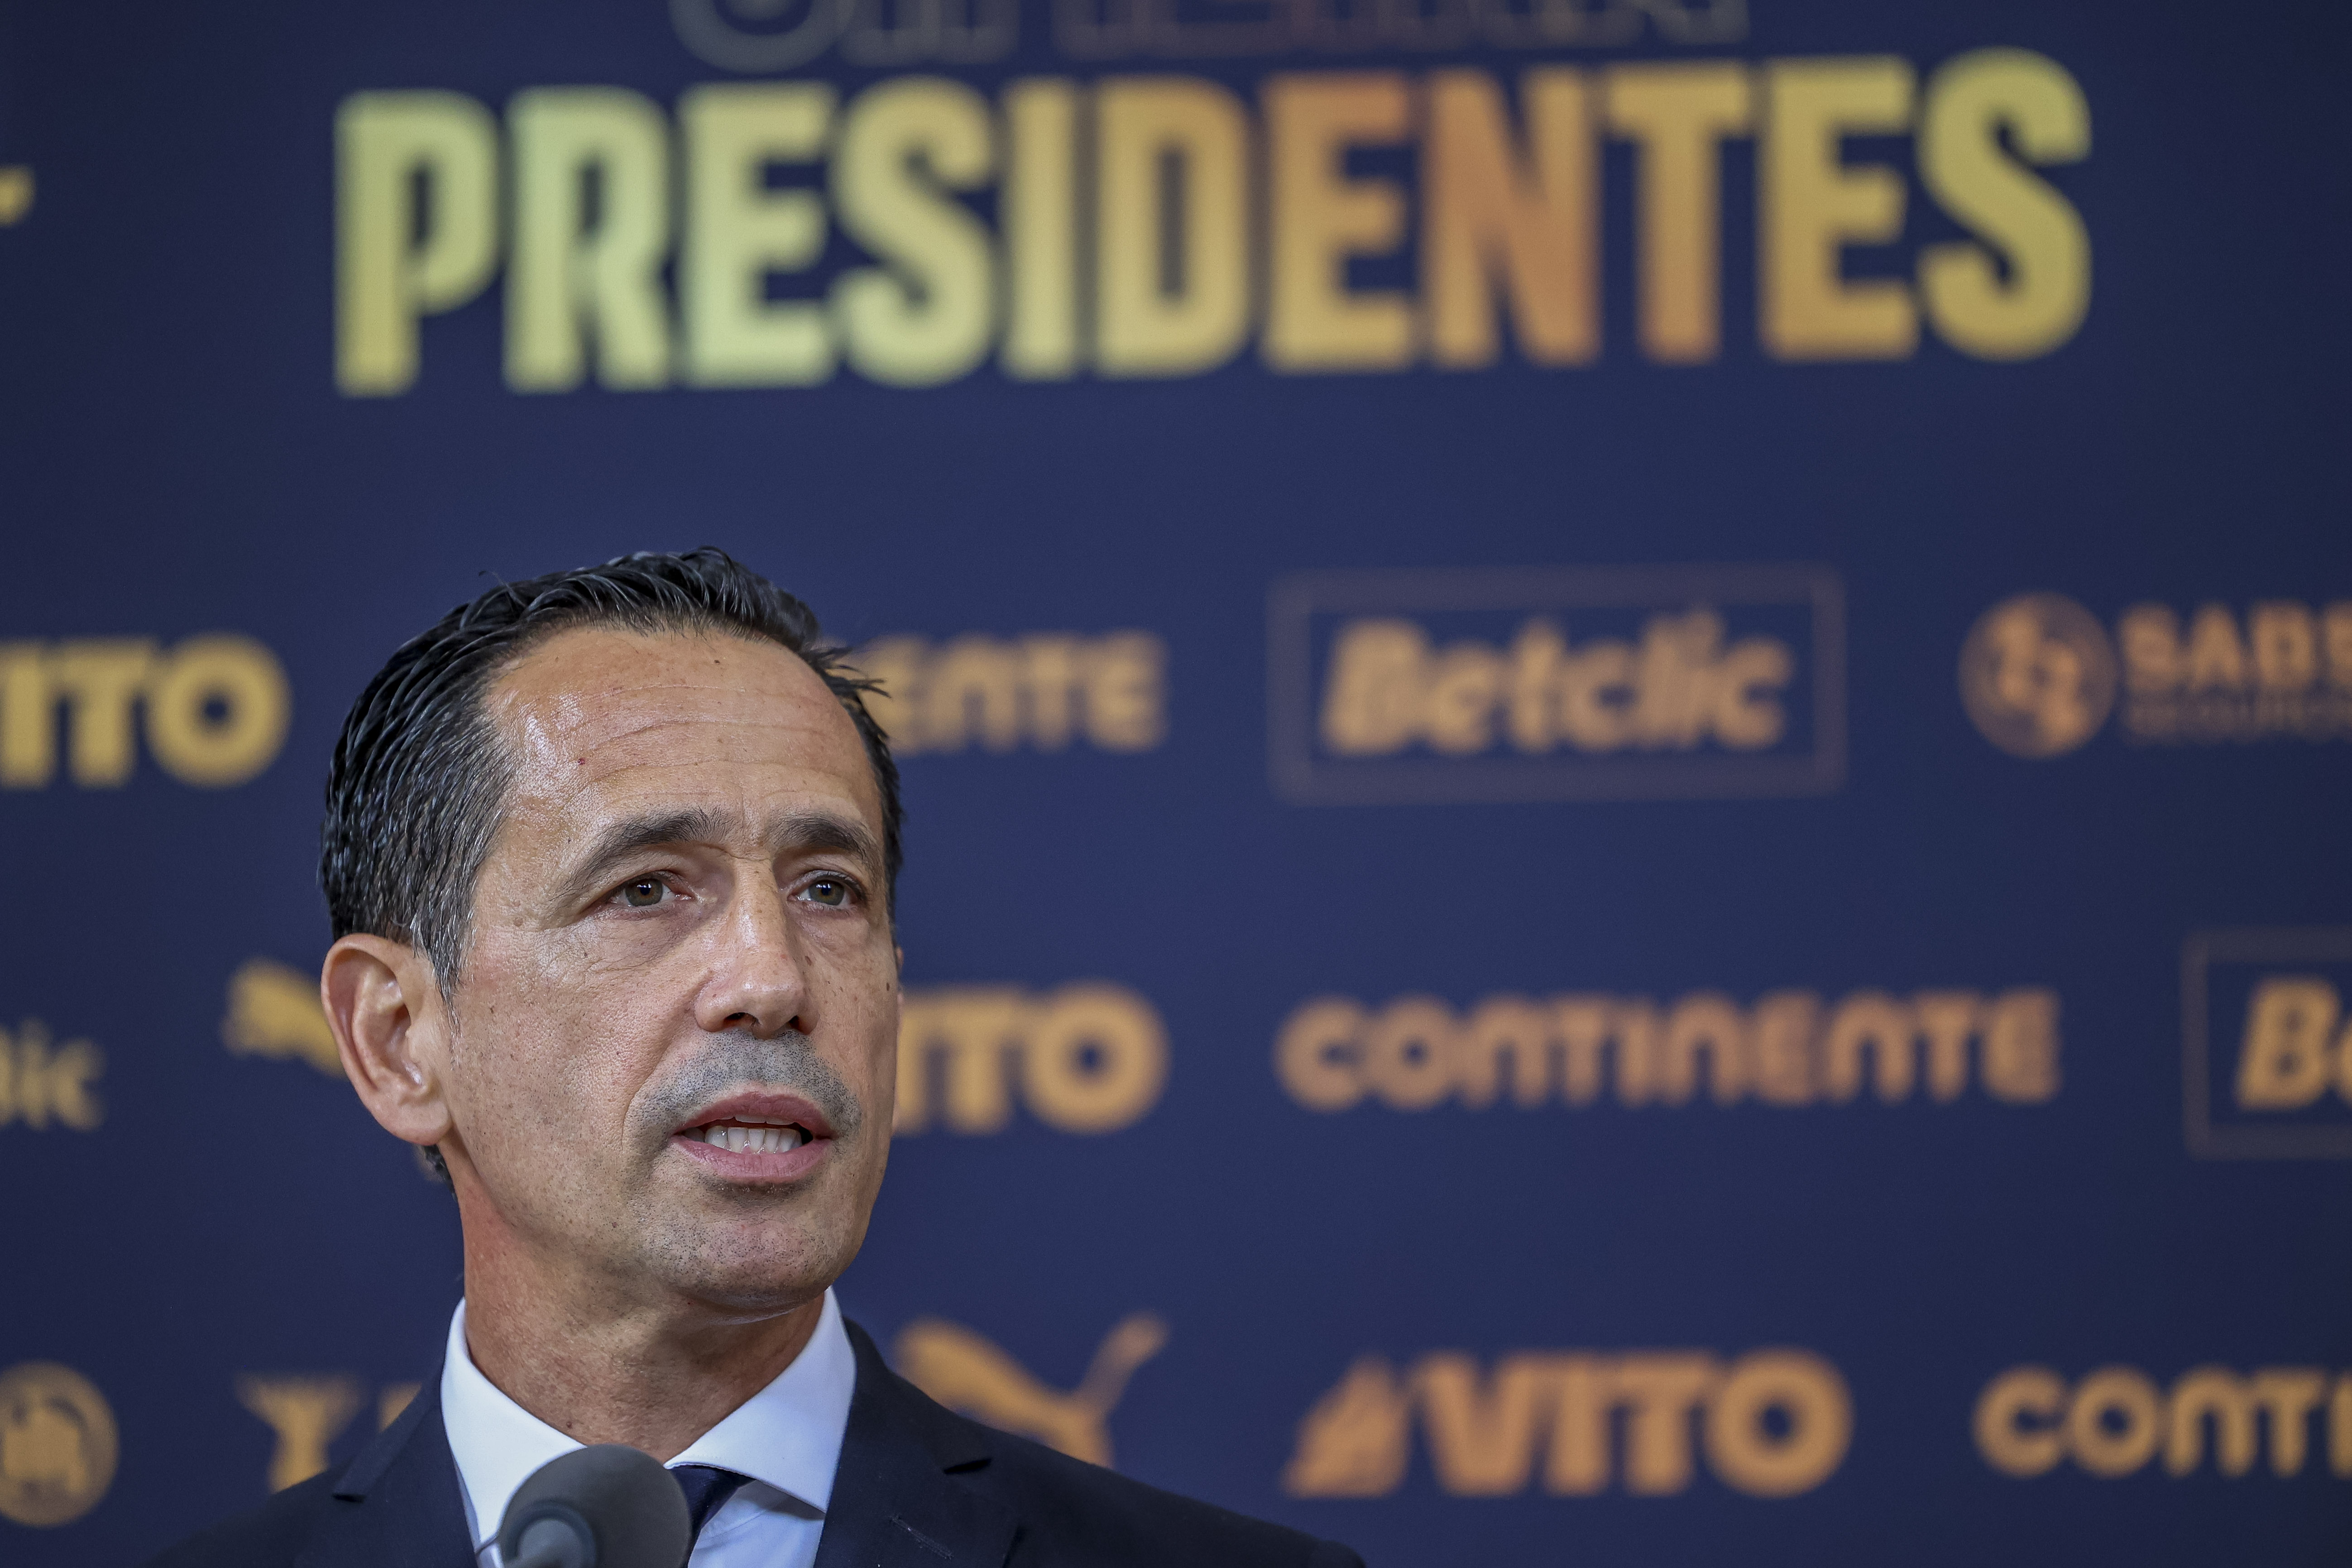 Pedro Proença diz que clubes das ligas profissionais gastam 25ME em seguros